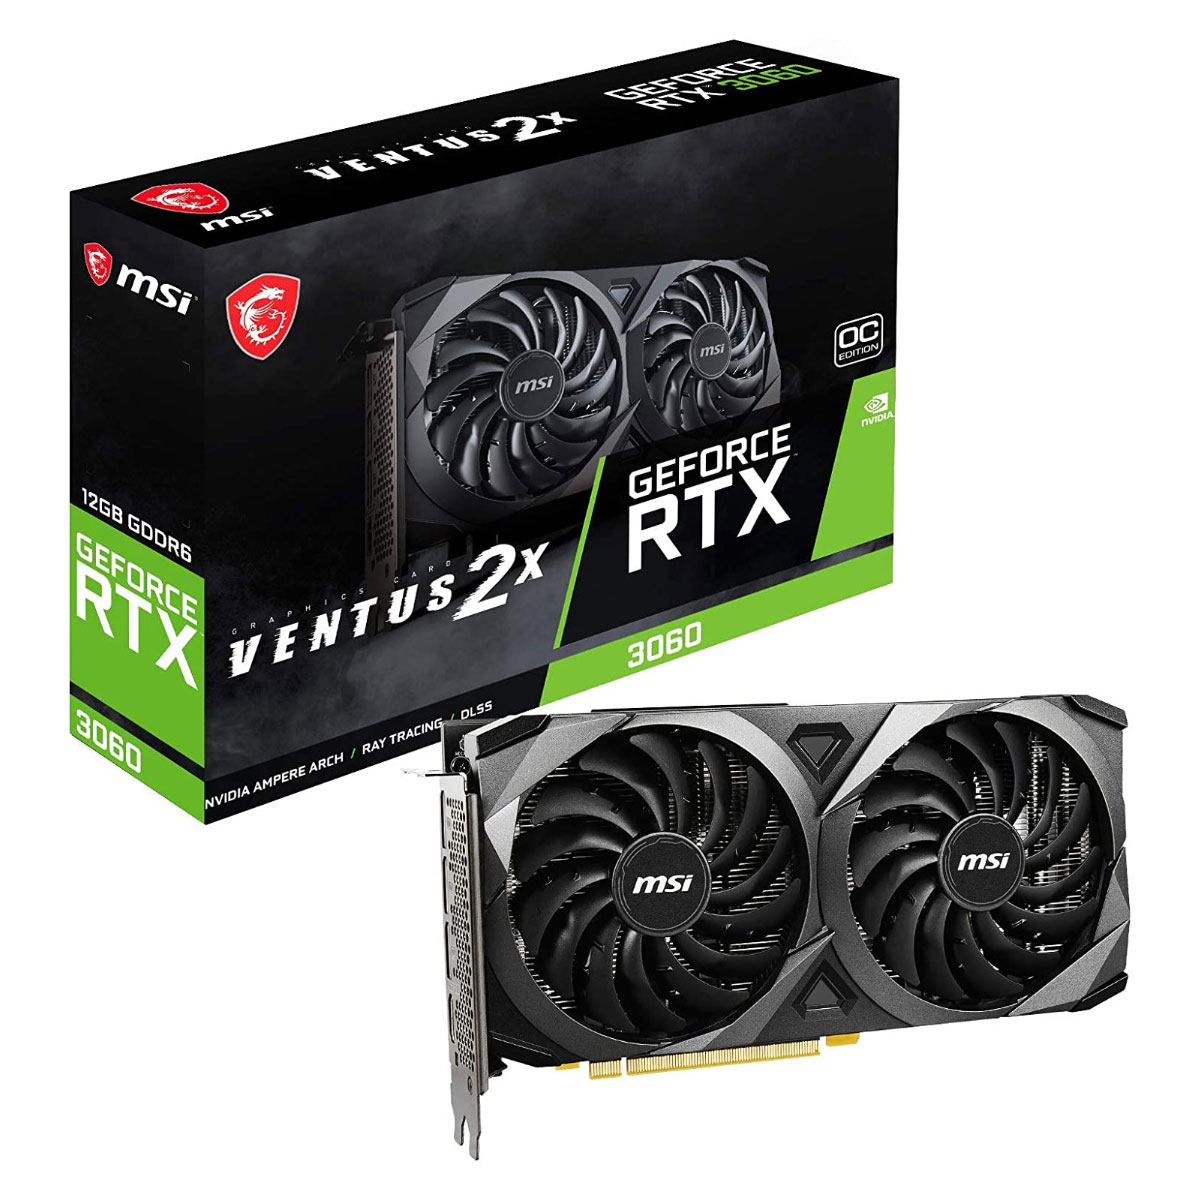 GeForce RTX 3060 12GB GDDR6 192bits - MSI Ventus 2X 12G OC - 912-V397-050